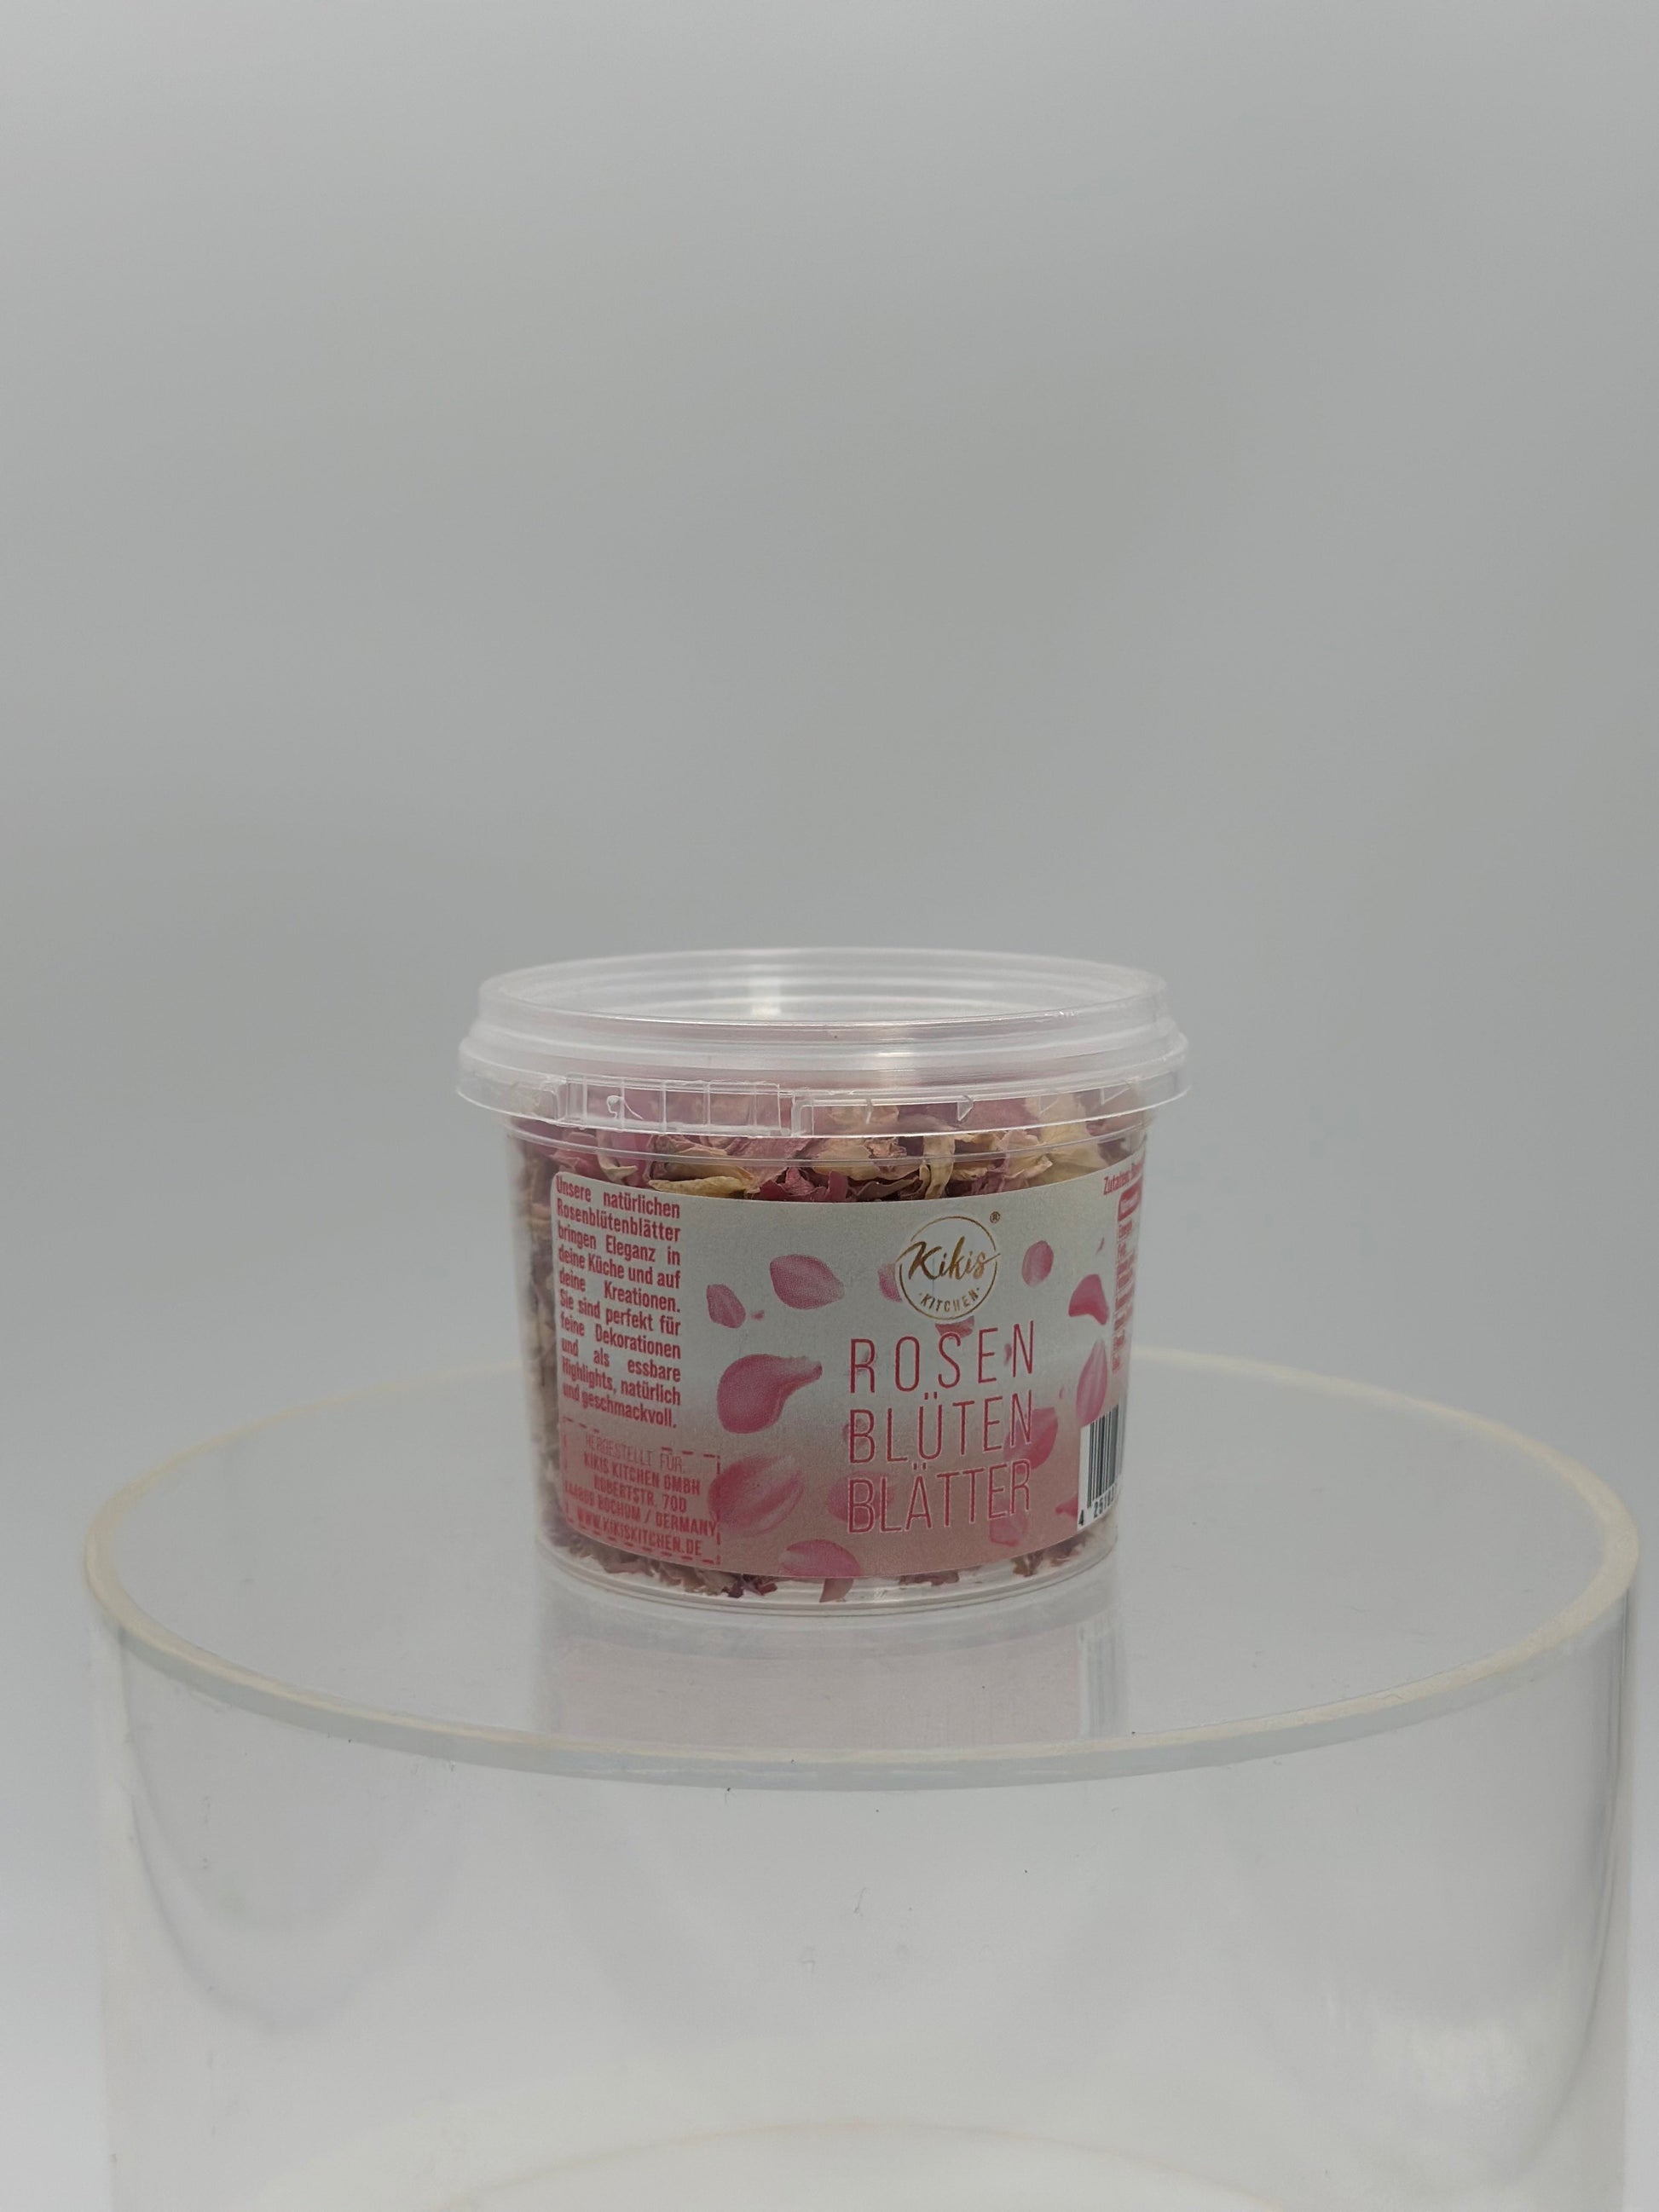 Neu: Kikis Rosenblütenblätter - 8g -  von Kikis Kitchen - Nur €3.90! Bestelle jetzt Kikis Kitchen